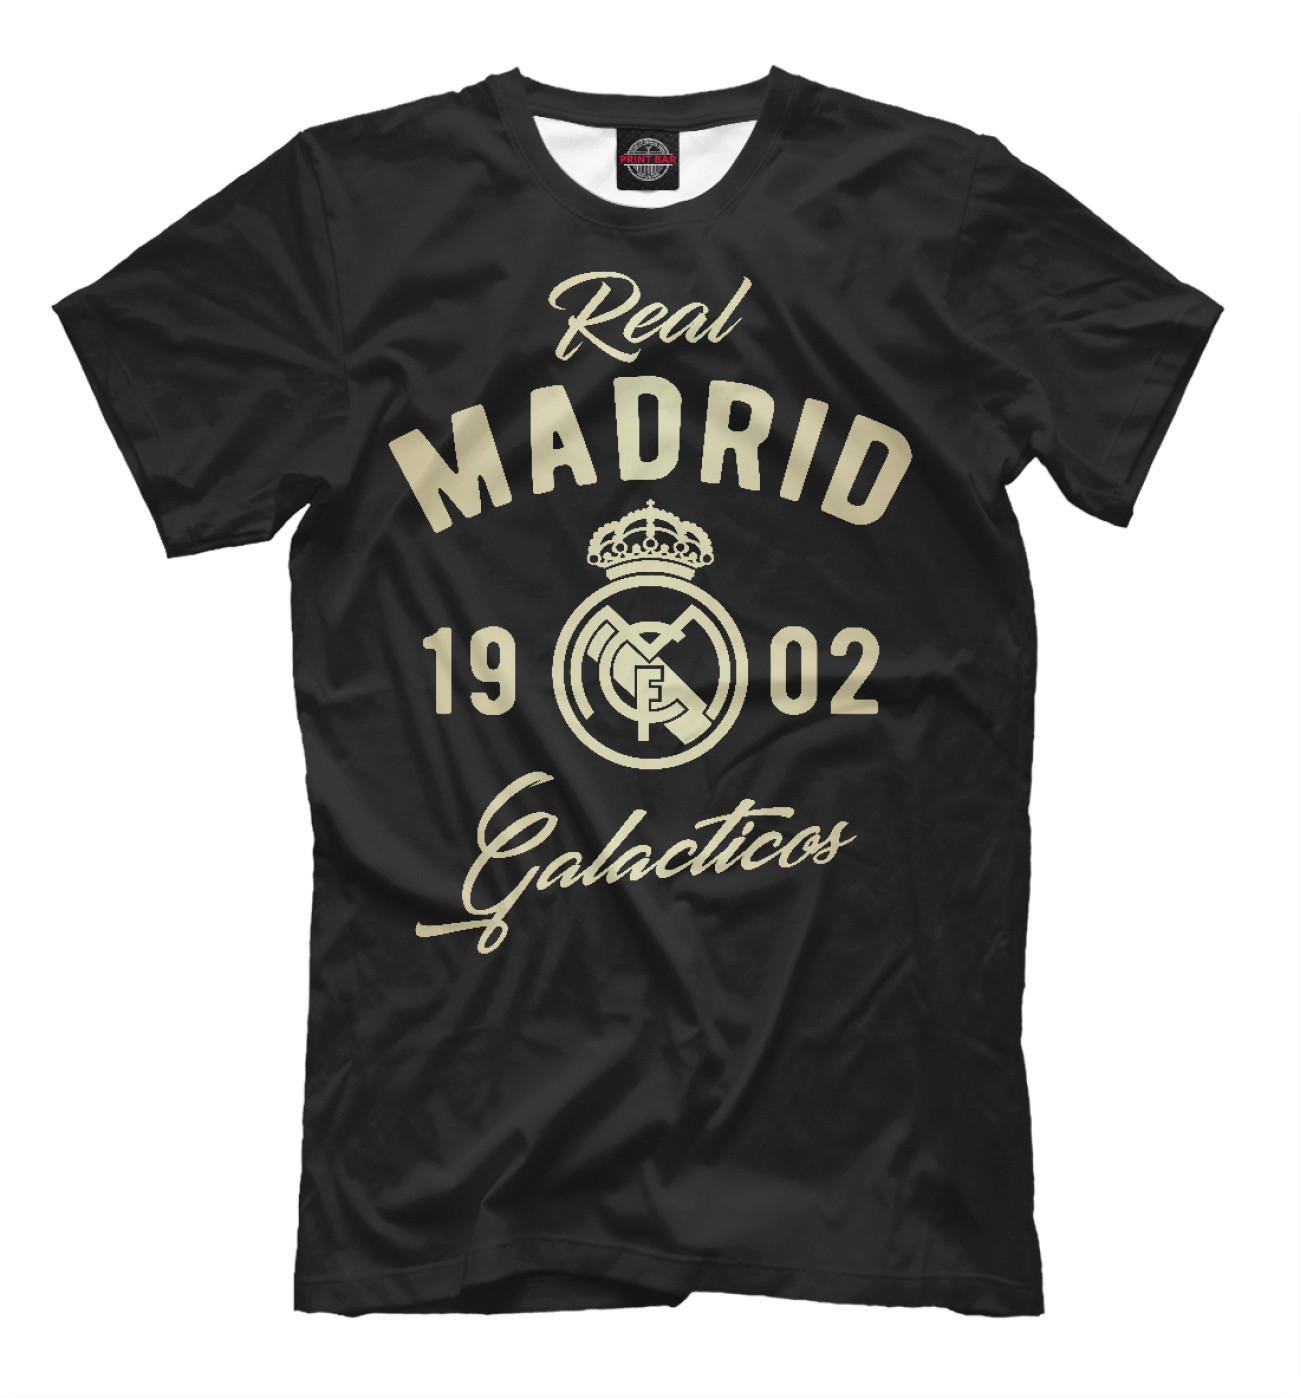 Мужская Футболка Реал Мадрид, артикул: REA-722914-fut-2